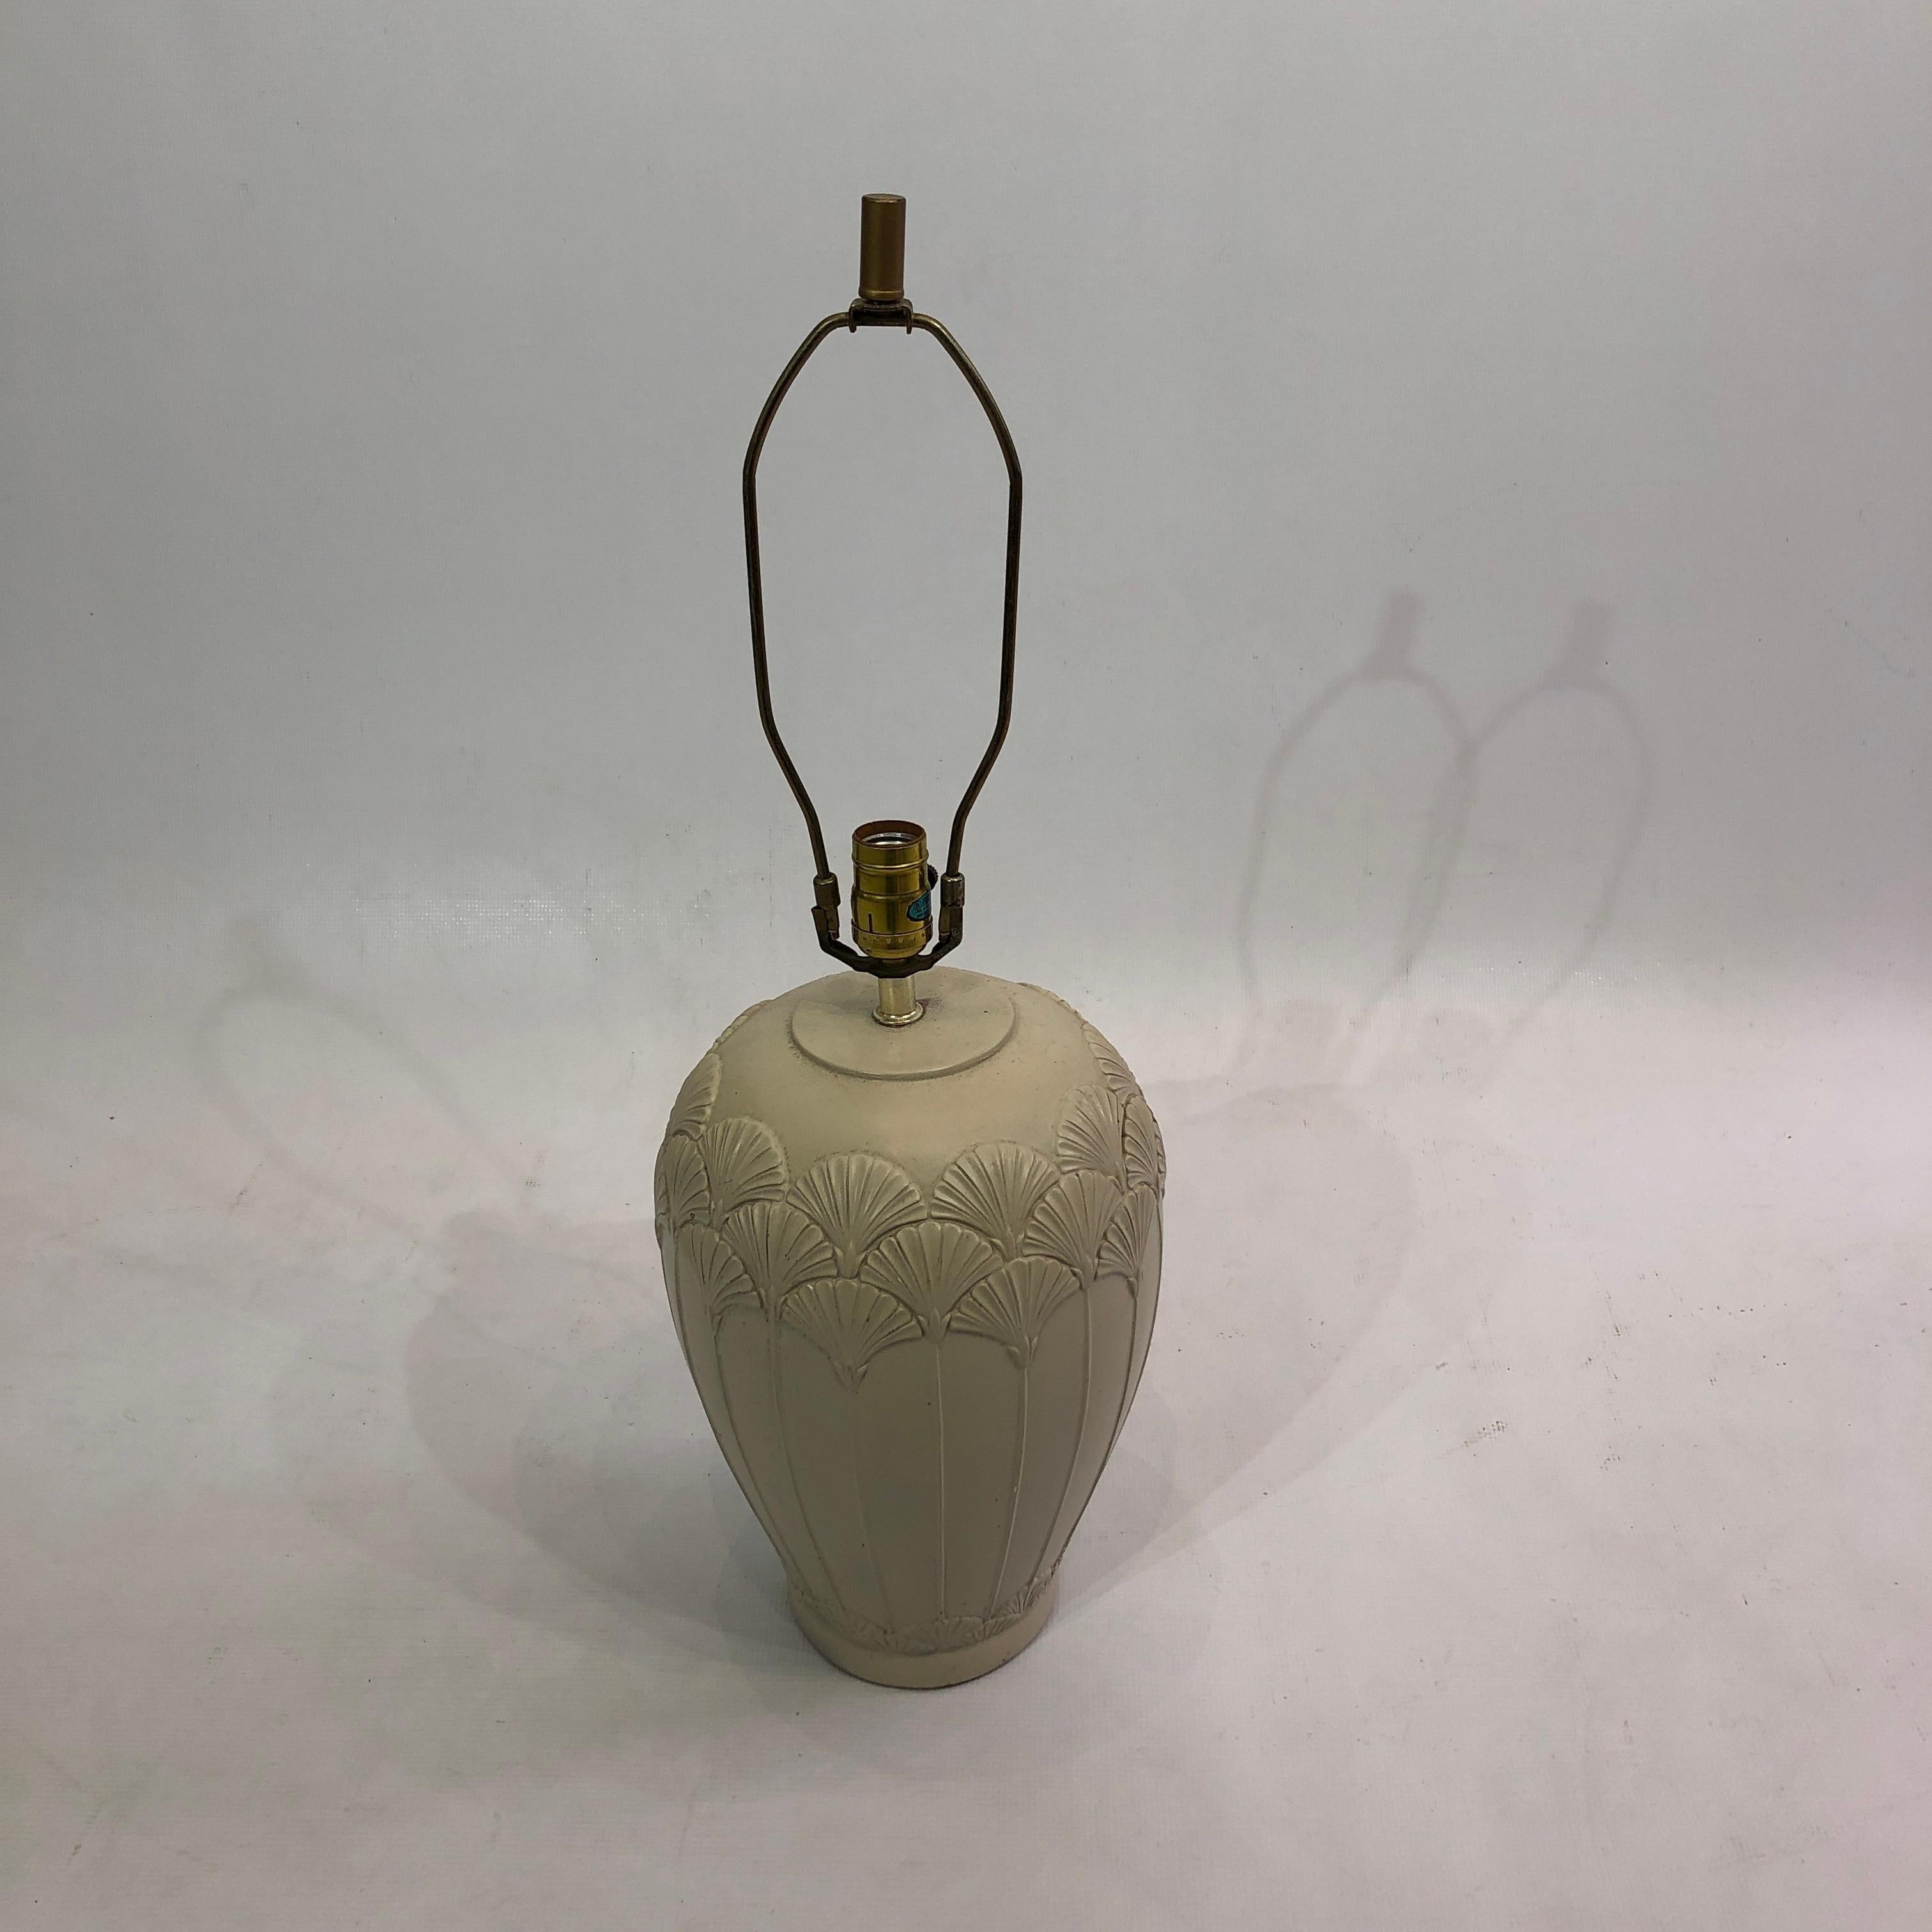 Cette lampe de table en céramique d'inspiration Art déco présente un motif de coquillage complexe et est proposée dans une couleur crème délavée. La base de la lampe a la forme d'une urne, avec un fond étroit et un sommet plus lourd. En saillie, une